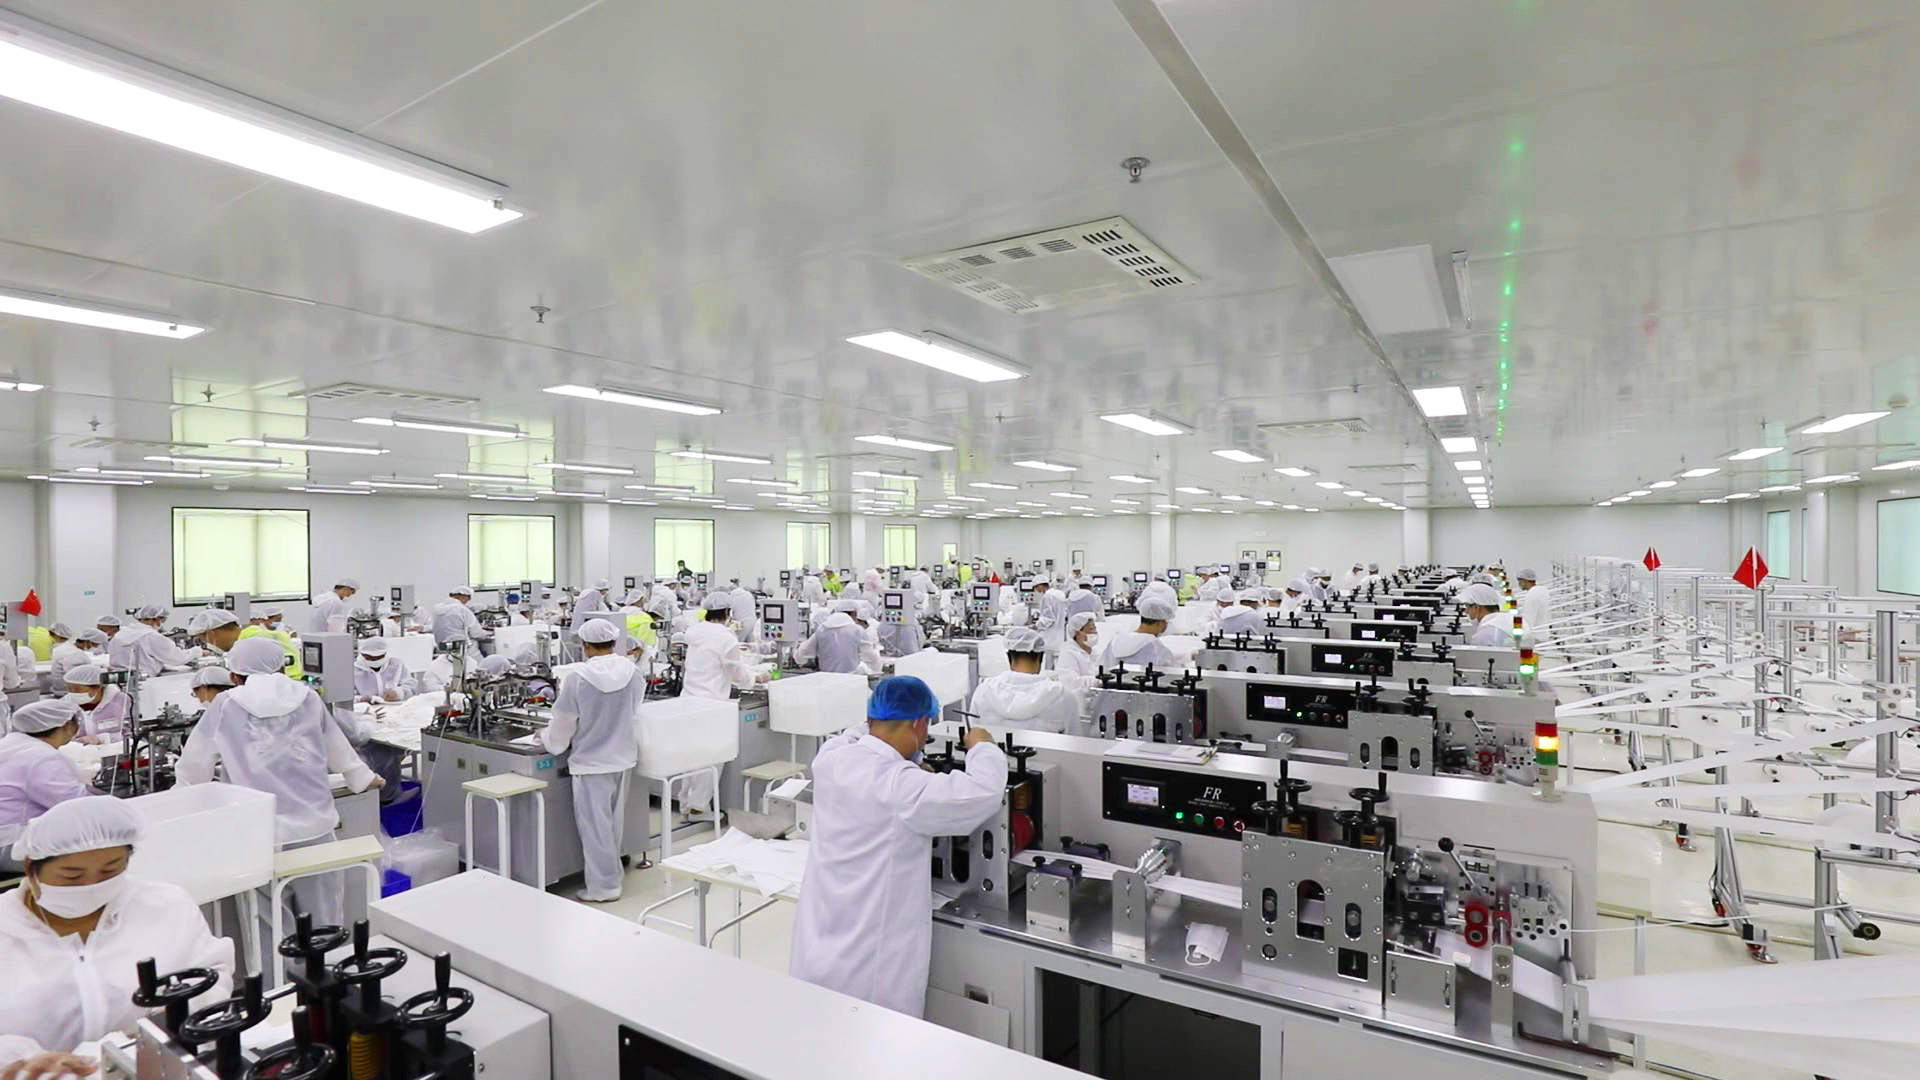 喜讯!高新区被授予"山东省首个优质医疗器械产品生产基地"称号